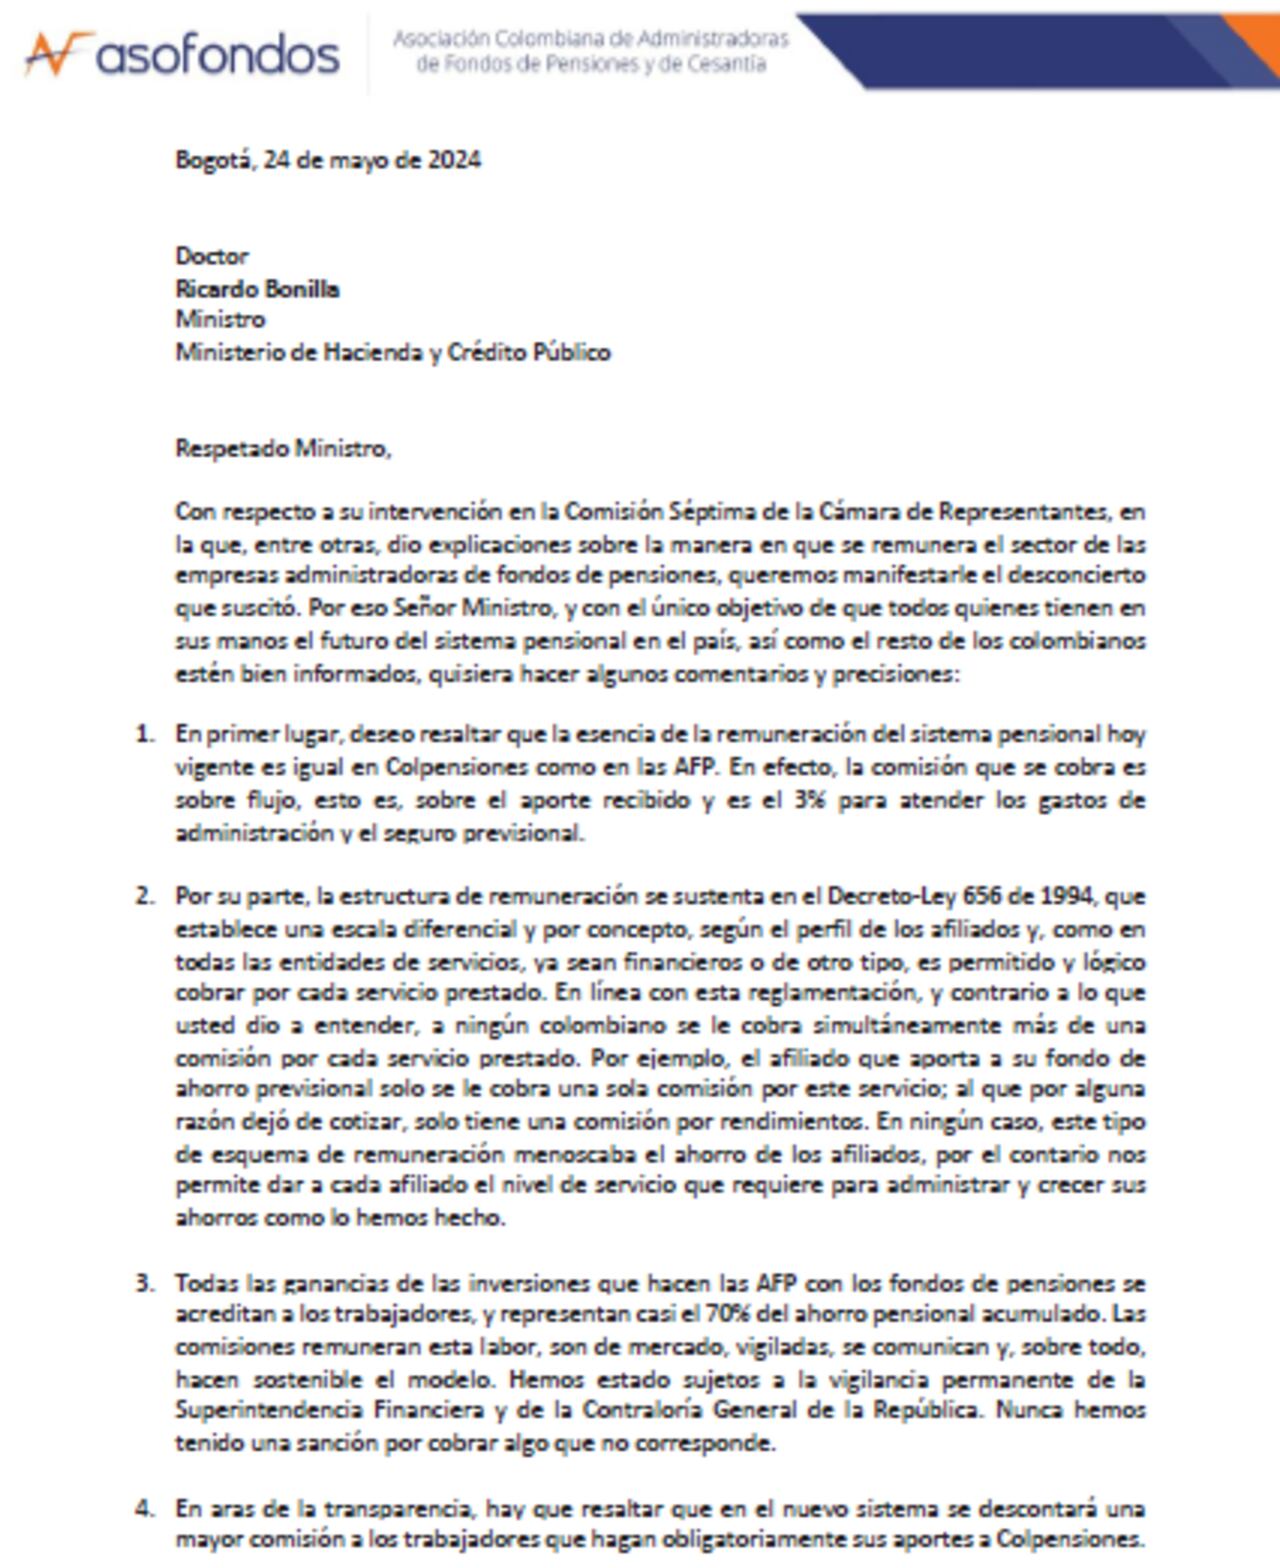 La carta de Asofondos al ministro de Hacienda, aclara que las comisiones son iguales para las AFP y Colpensiones.